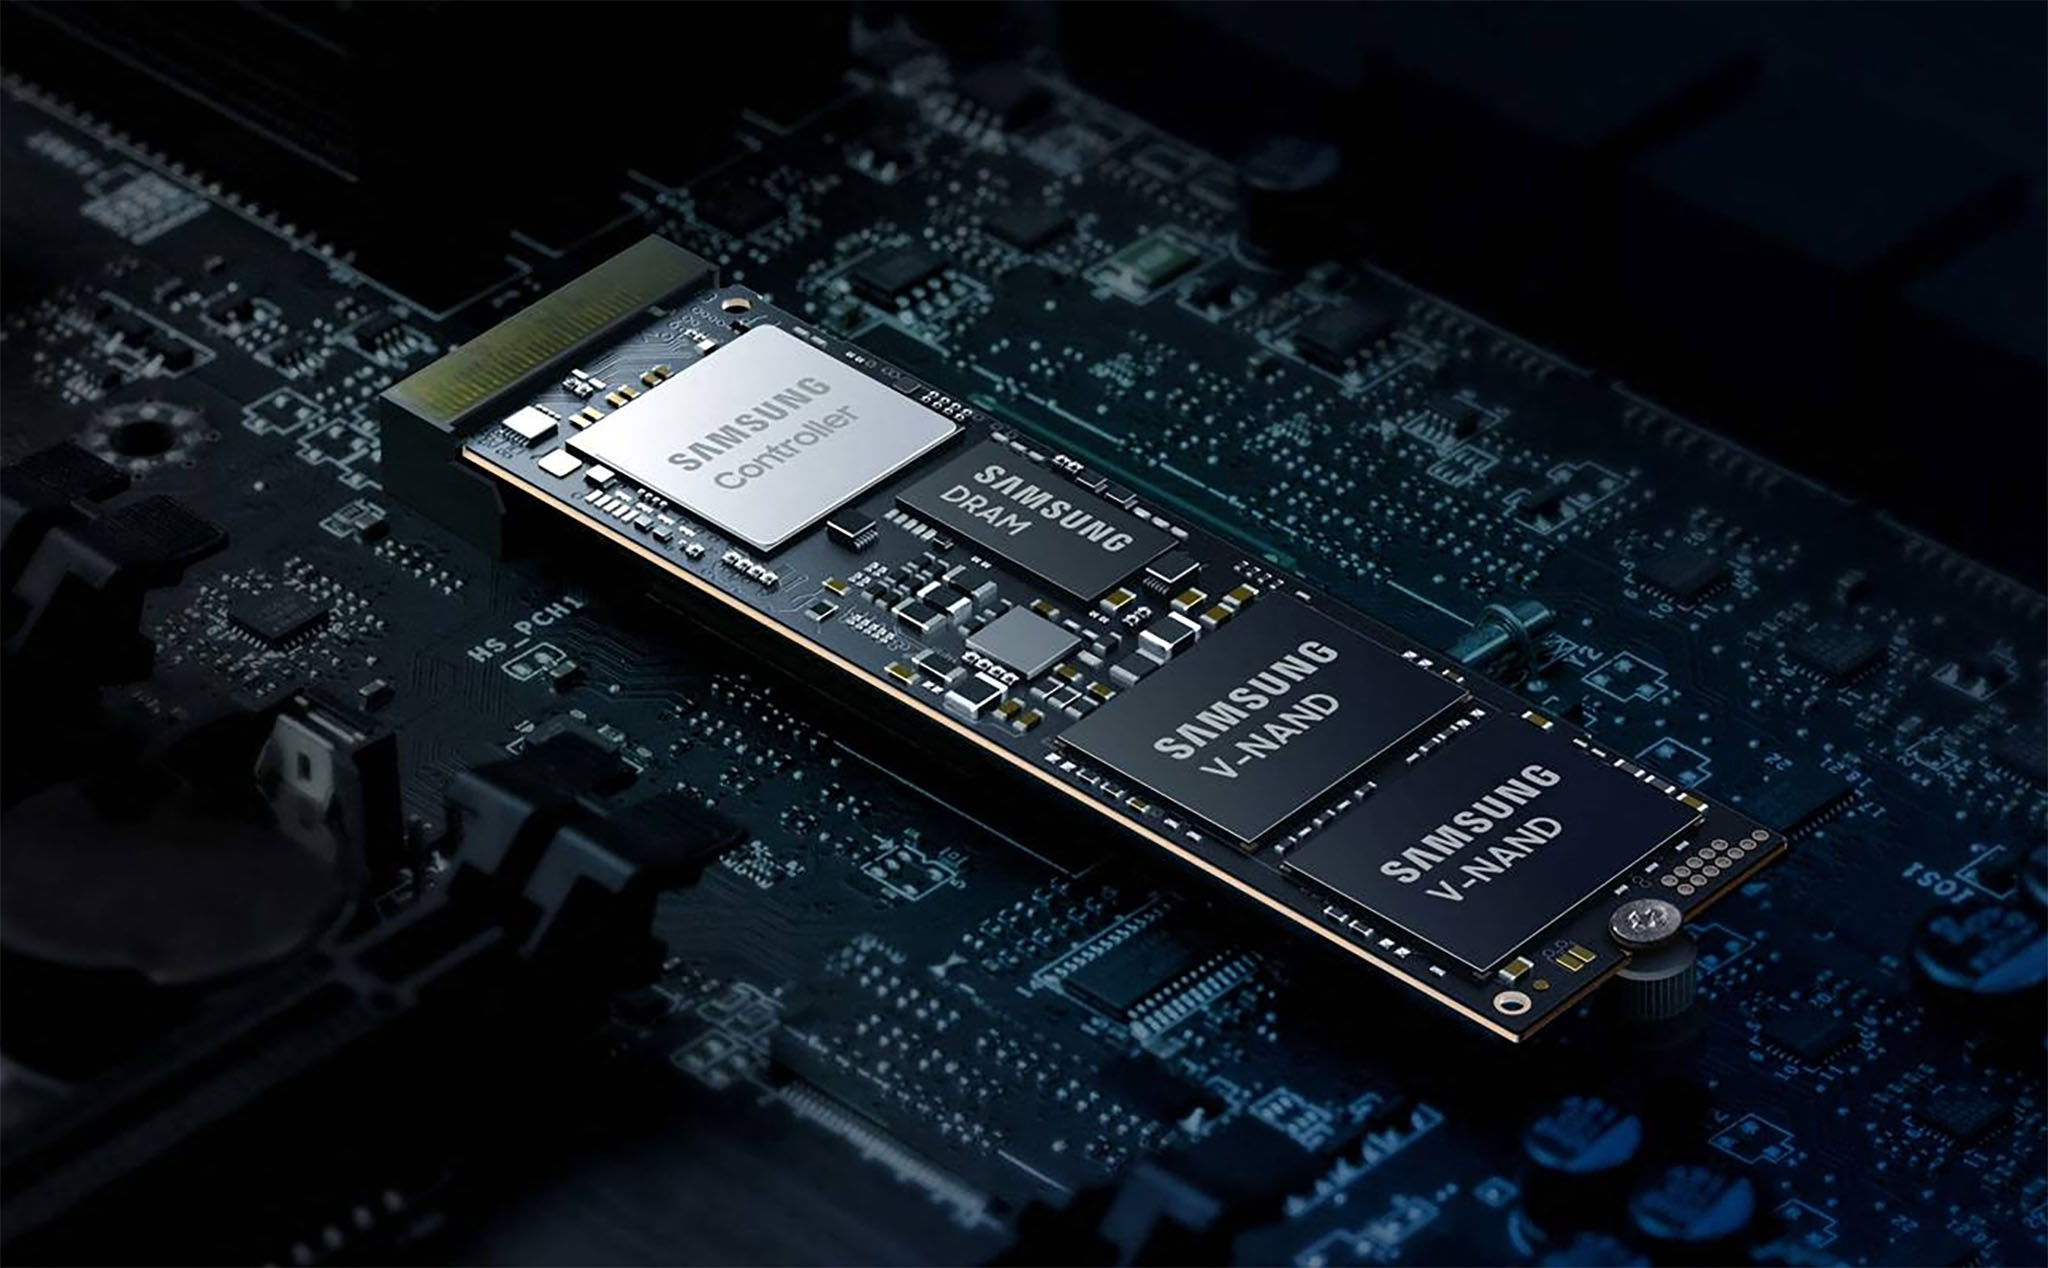 Samsung hướng đến chip NAND 1000-layer vào năm 2030, ổ SSD có thể đạt dung lượng đến 1000 TB